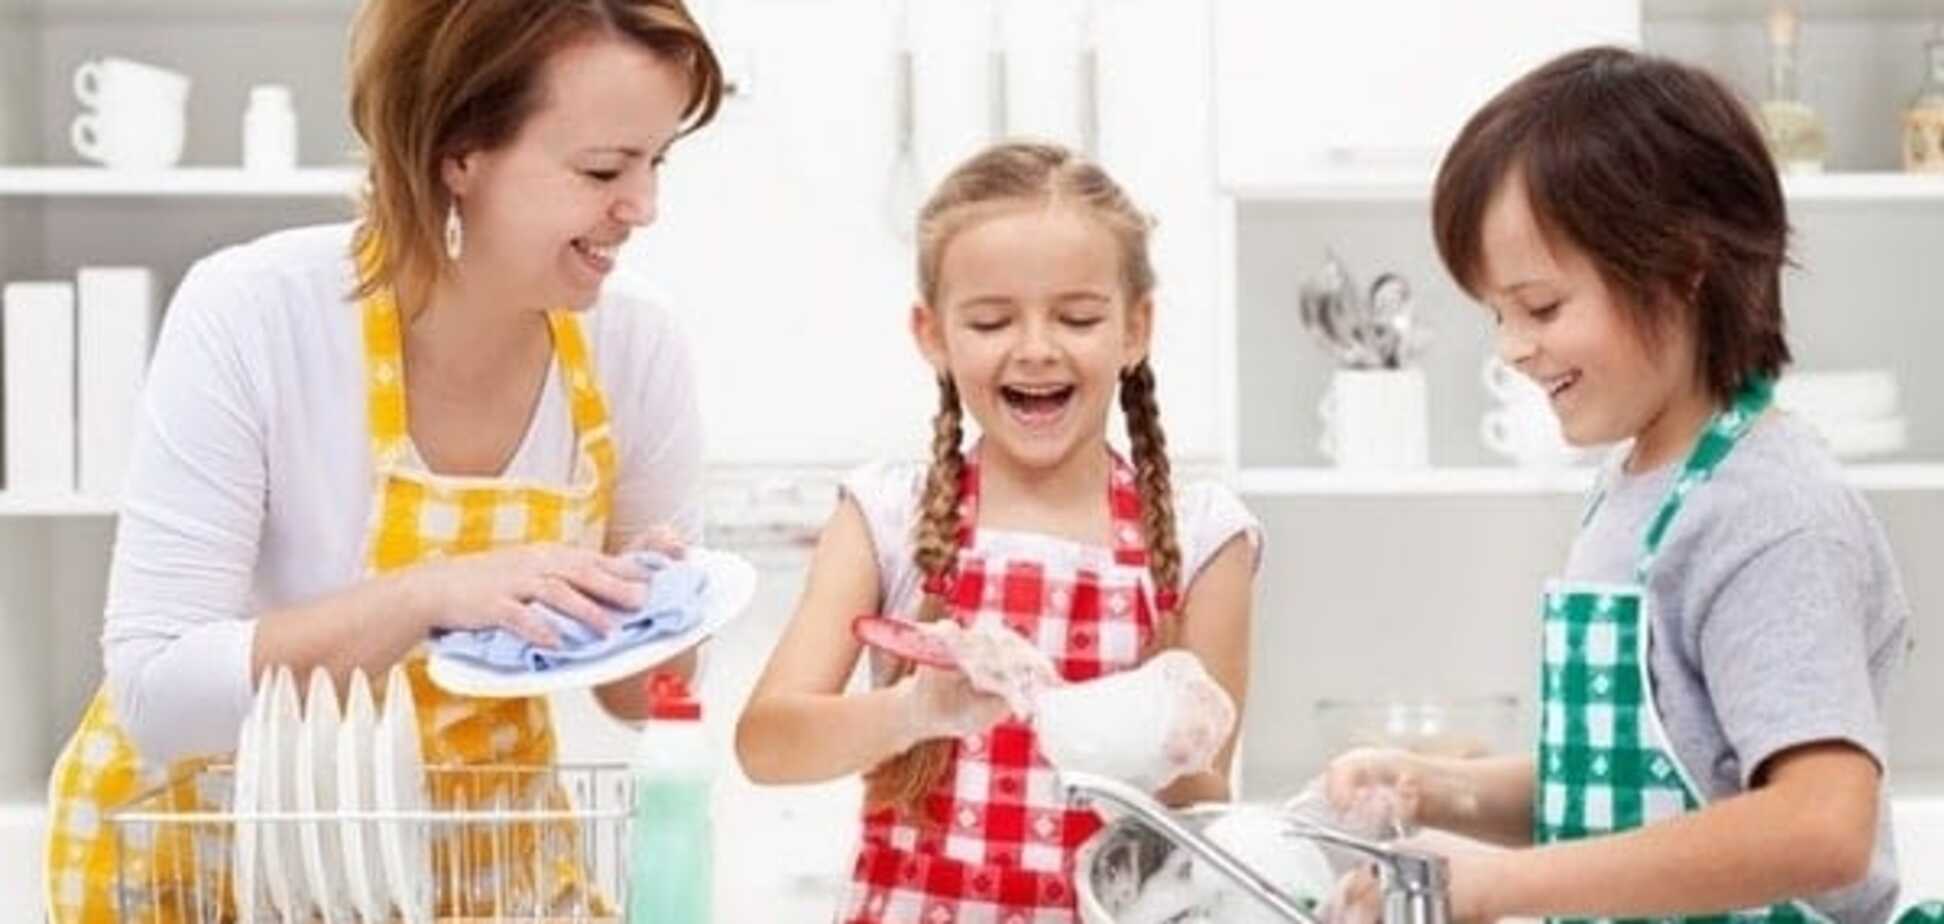 Какие домашние обязанности можно поручить ребенку